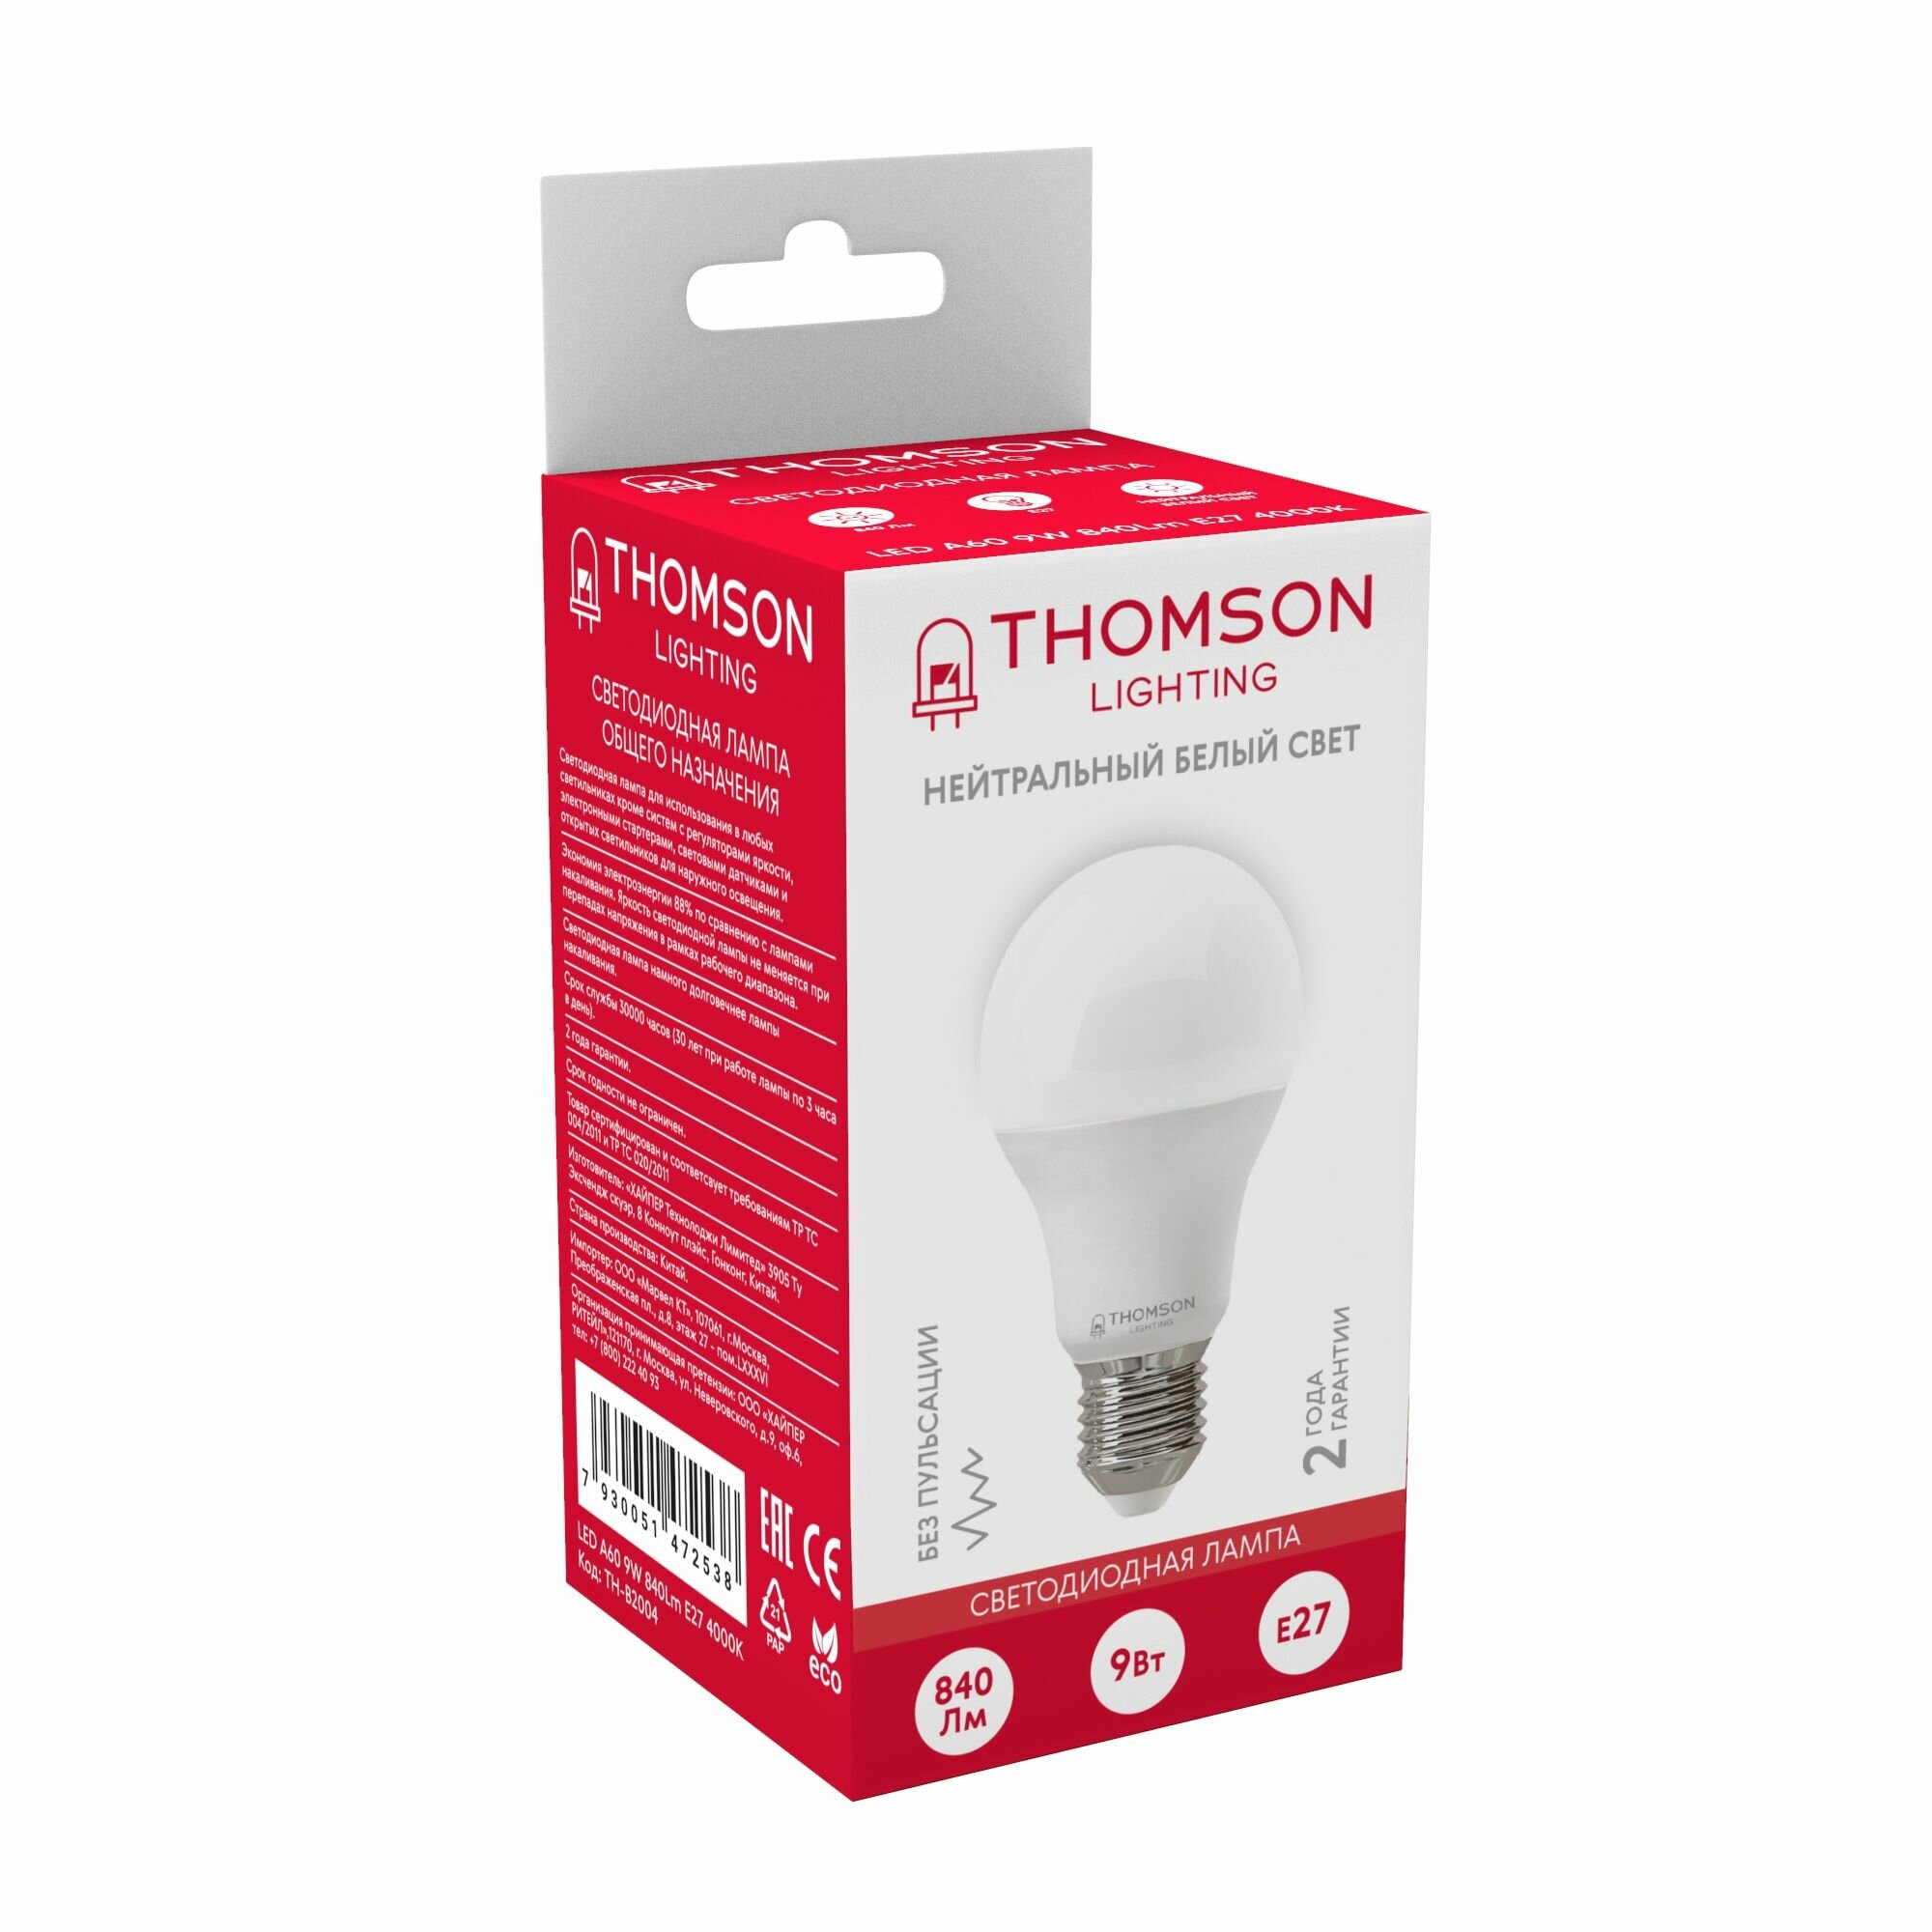 Лампочка Thomson TH-B2004 9 Вт, E27, 4000К, груша, нейтральный белый свет